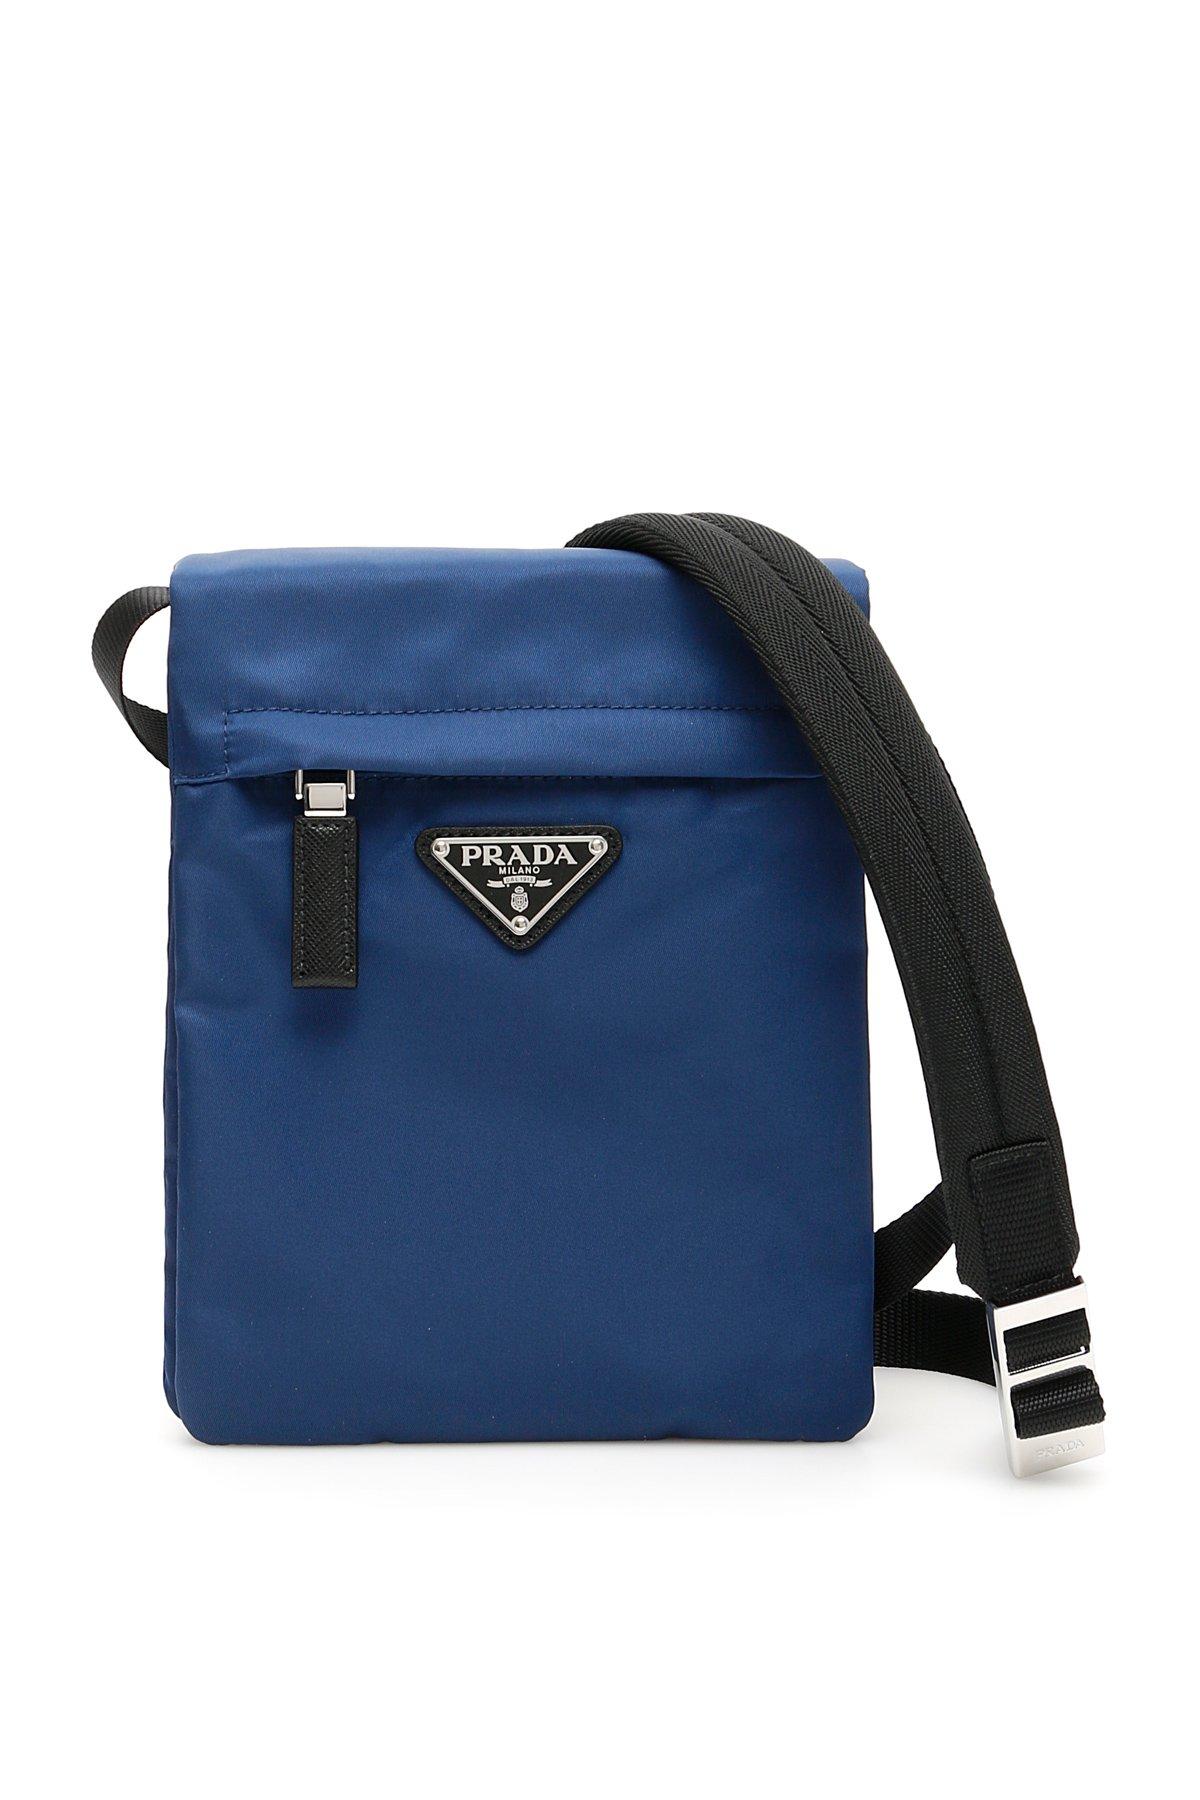 Prada Synthetic Logo Shoulder Bag in Blue for Men - Lyst